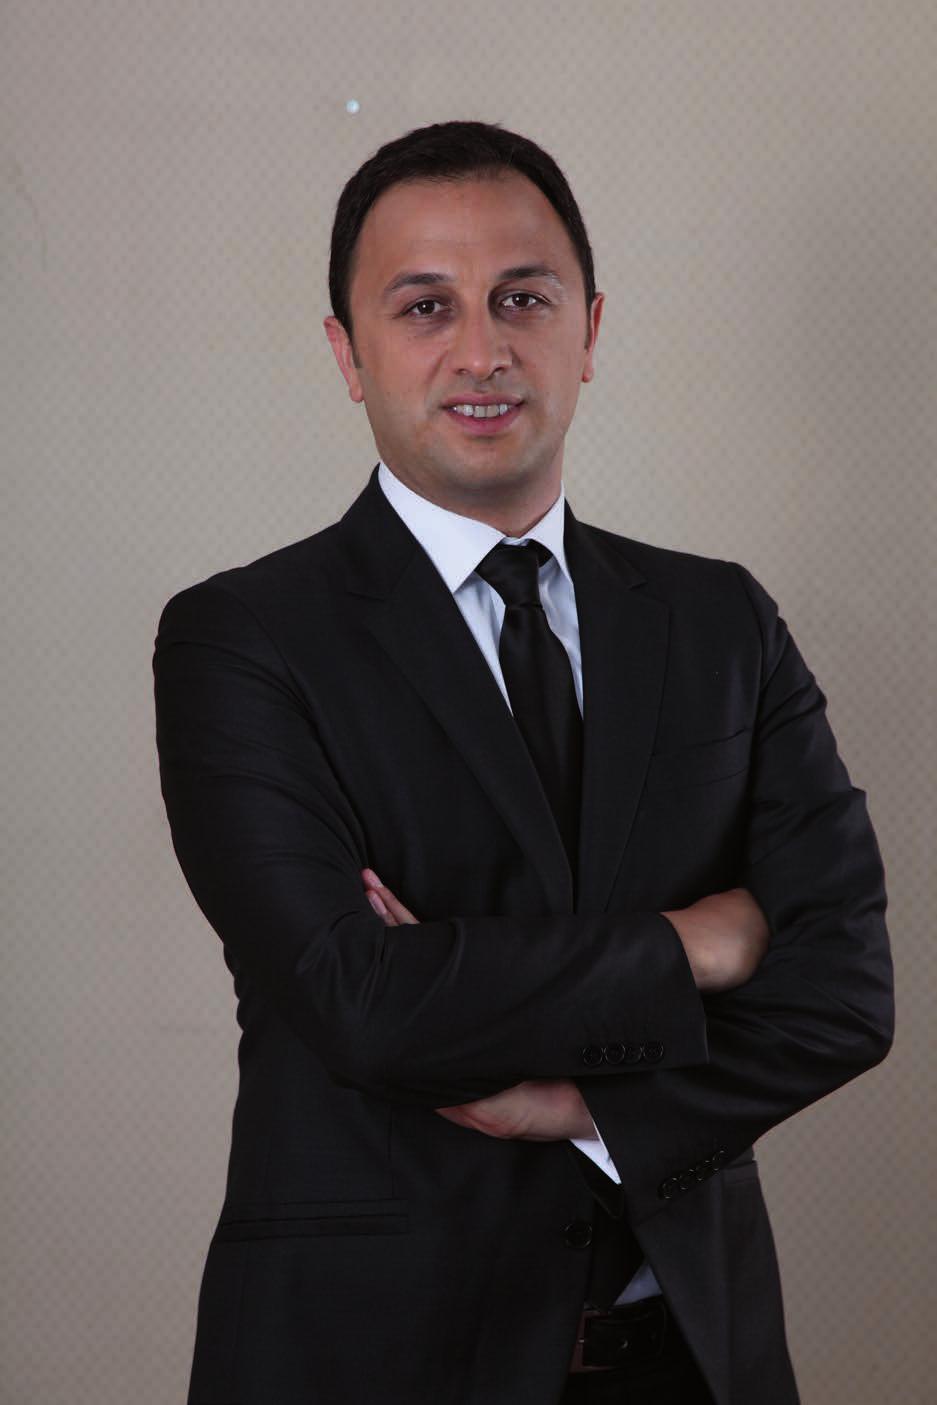 Gaz Ticareti Direktörü Hasan Tahsin Turan Naturelgaz CEO su Naturelgaz da Görev Değişimi Şirketimizde, 2012 yılından bu yana Naturelgaz Yönetim Kurulu üyeliğini ve Ağustos 2015 yılından itibaren de